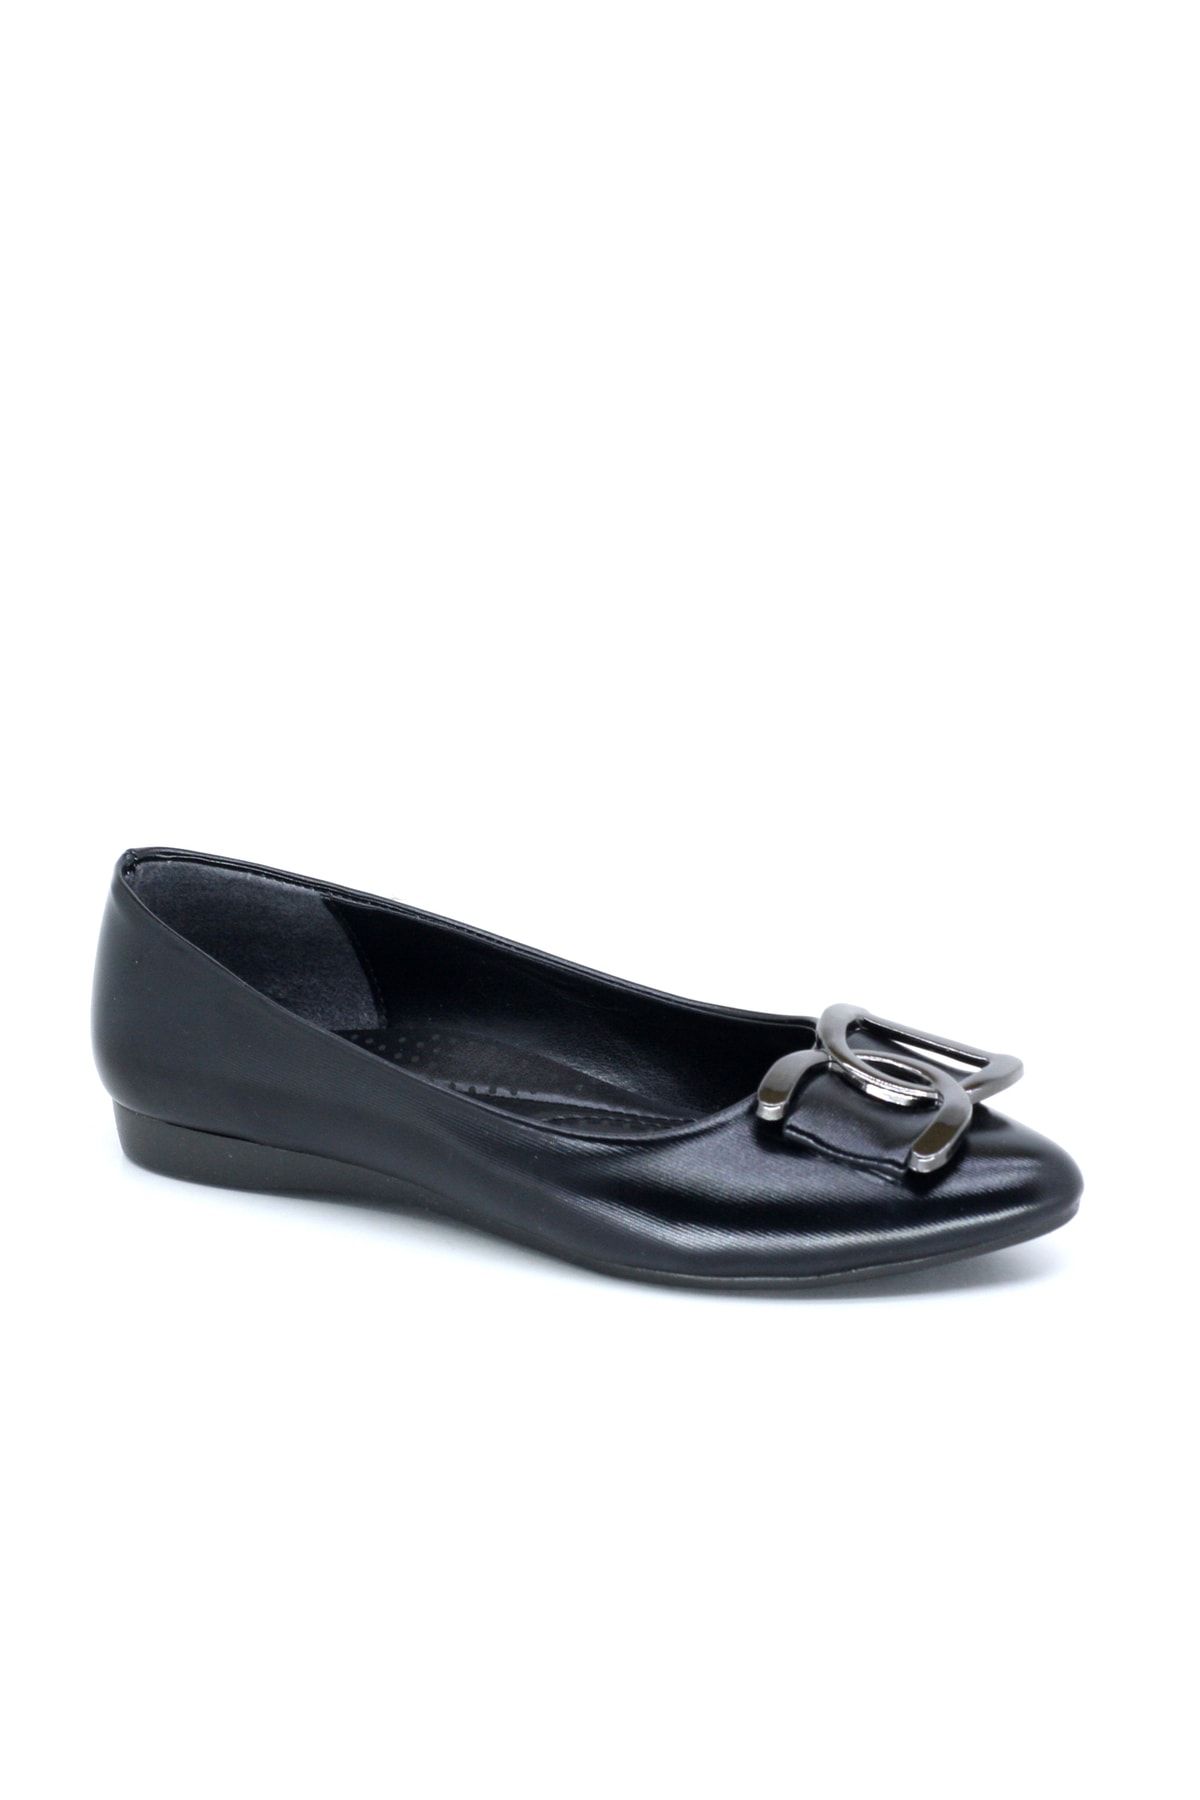 TRENDYSHOES Trendyshose 1961 Rahat Kadın Taşlı Günlük Ayakkabı